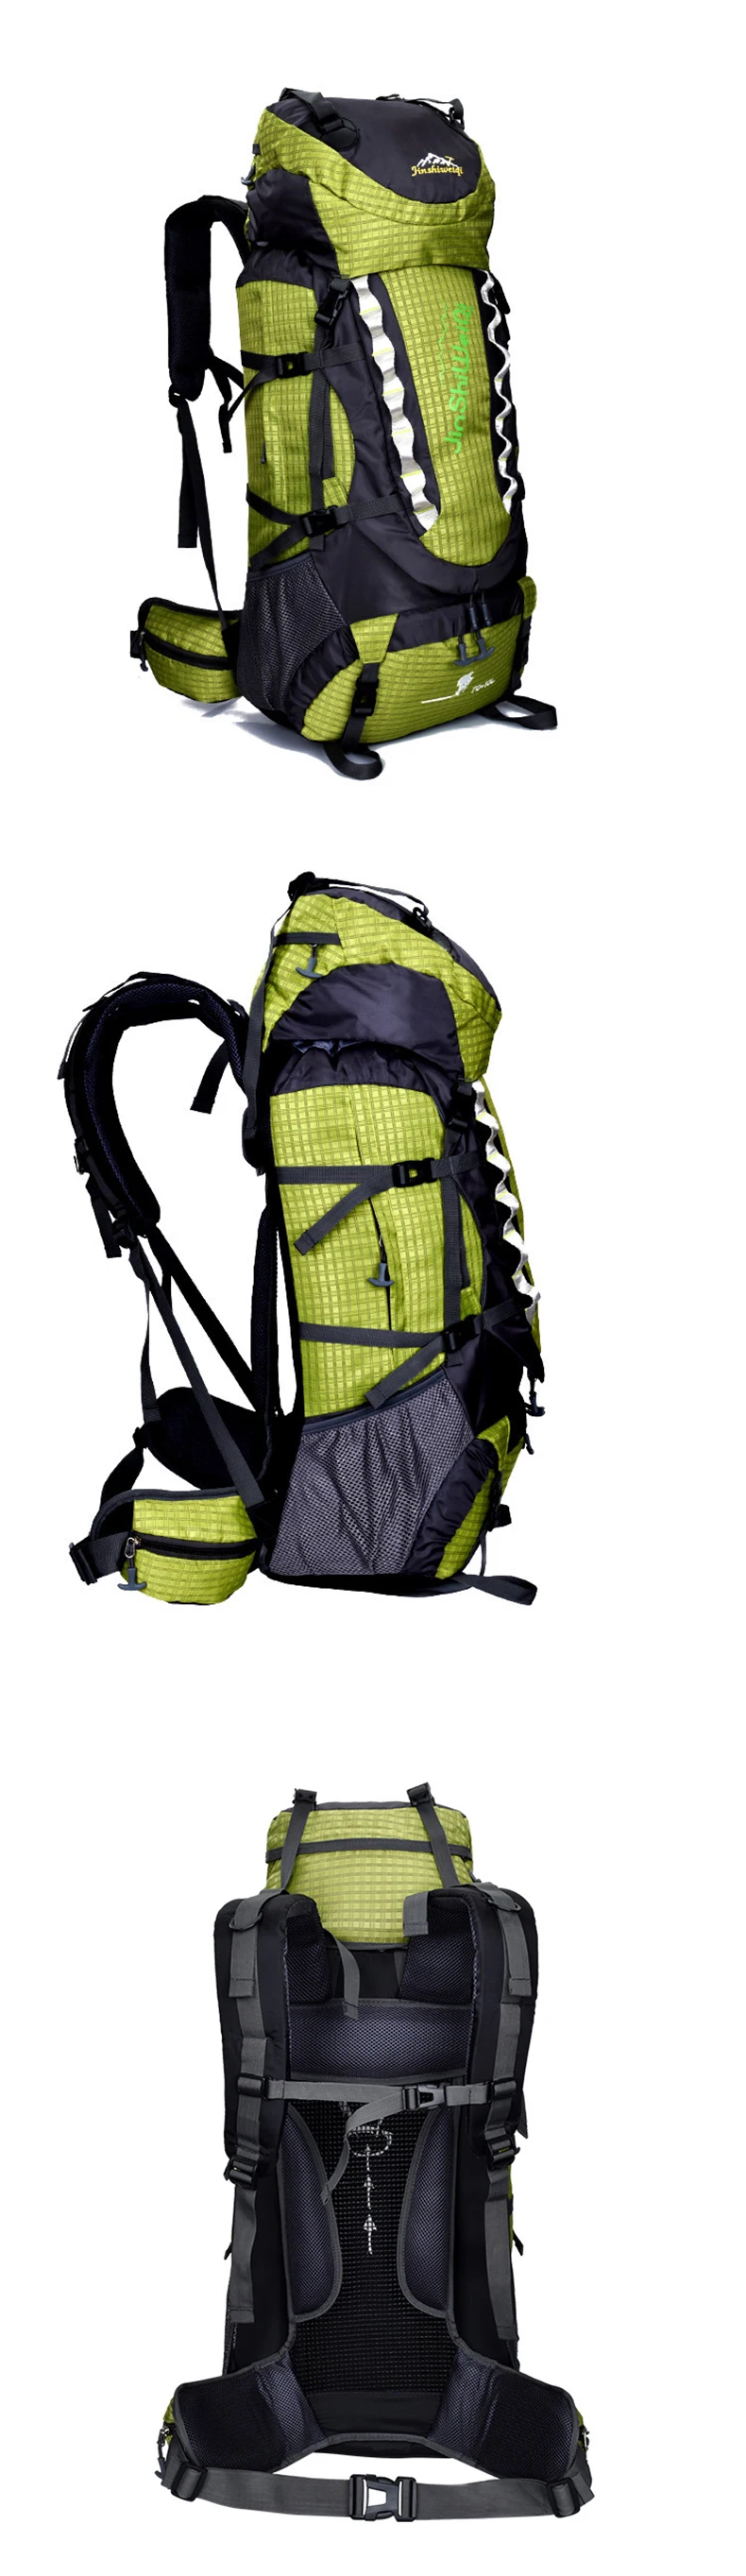 80L большой водонепроницаемый рюкзак mochila рюкзак для путешествий пакет женщин мужчин 2017